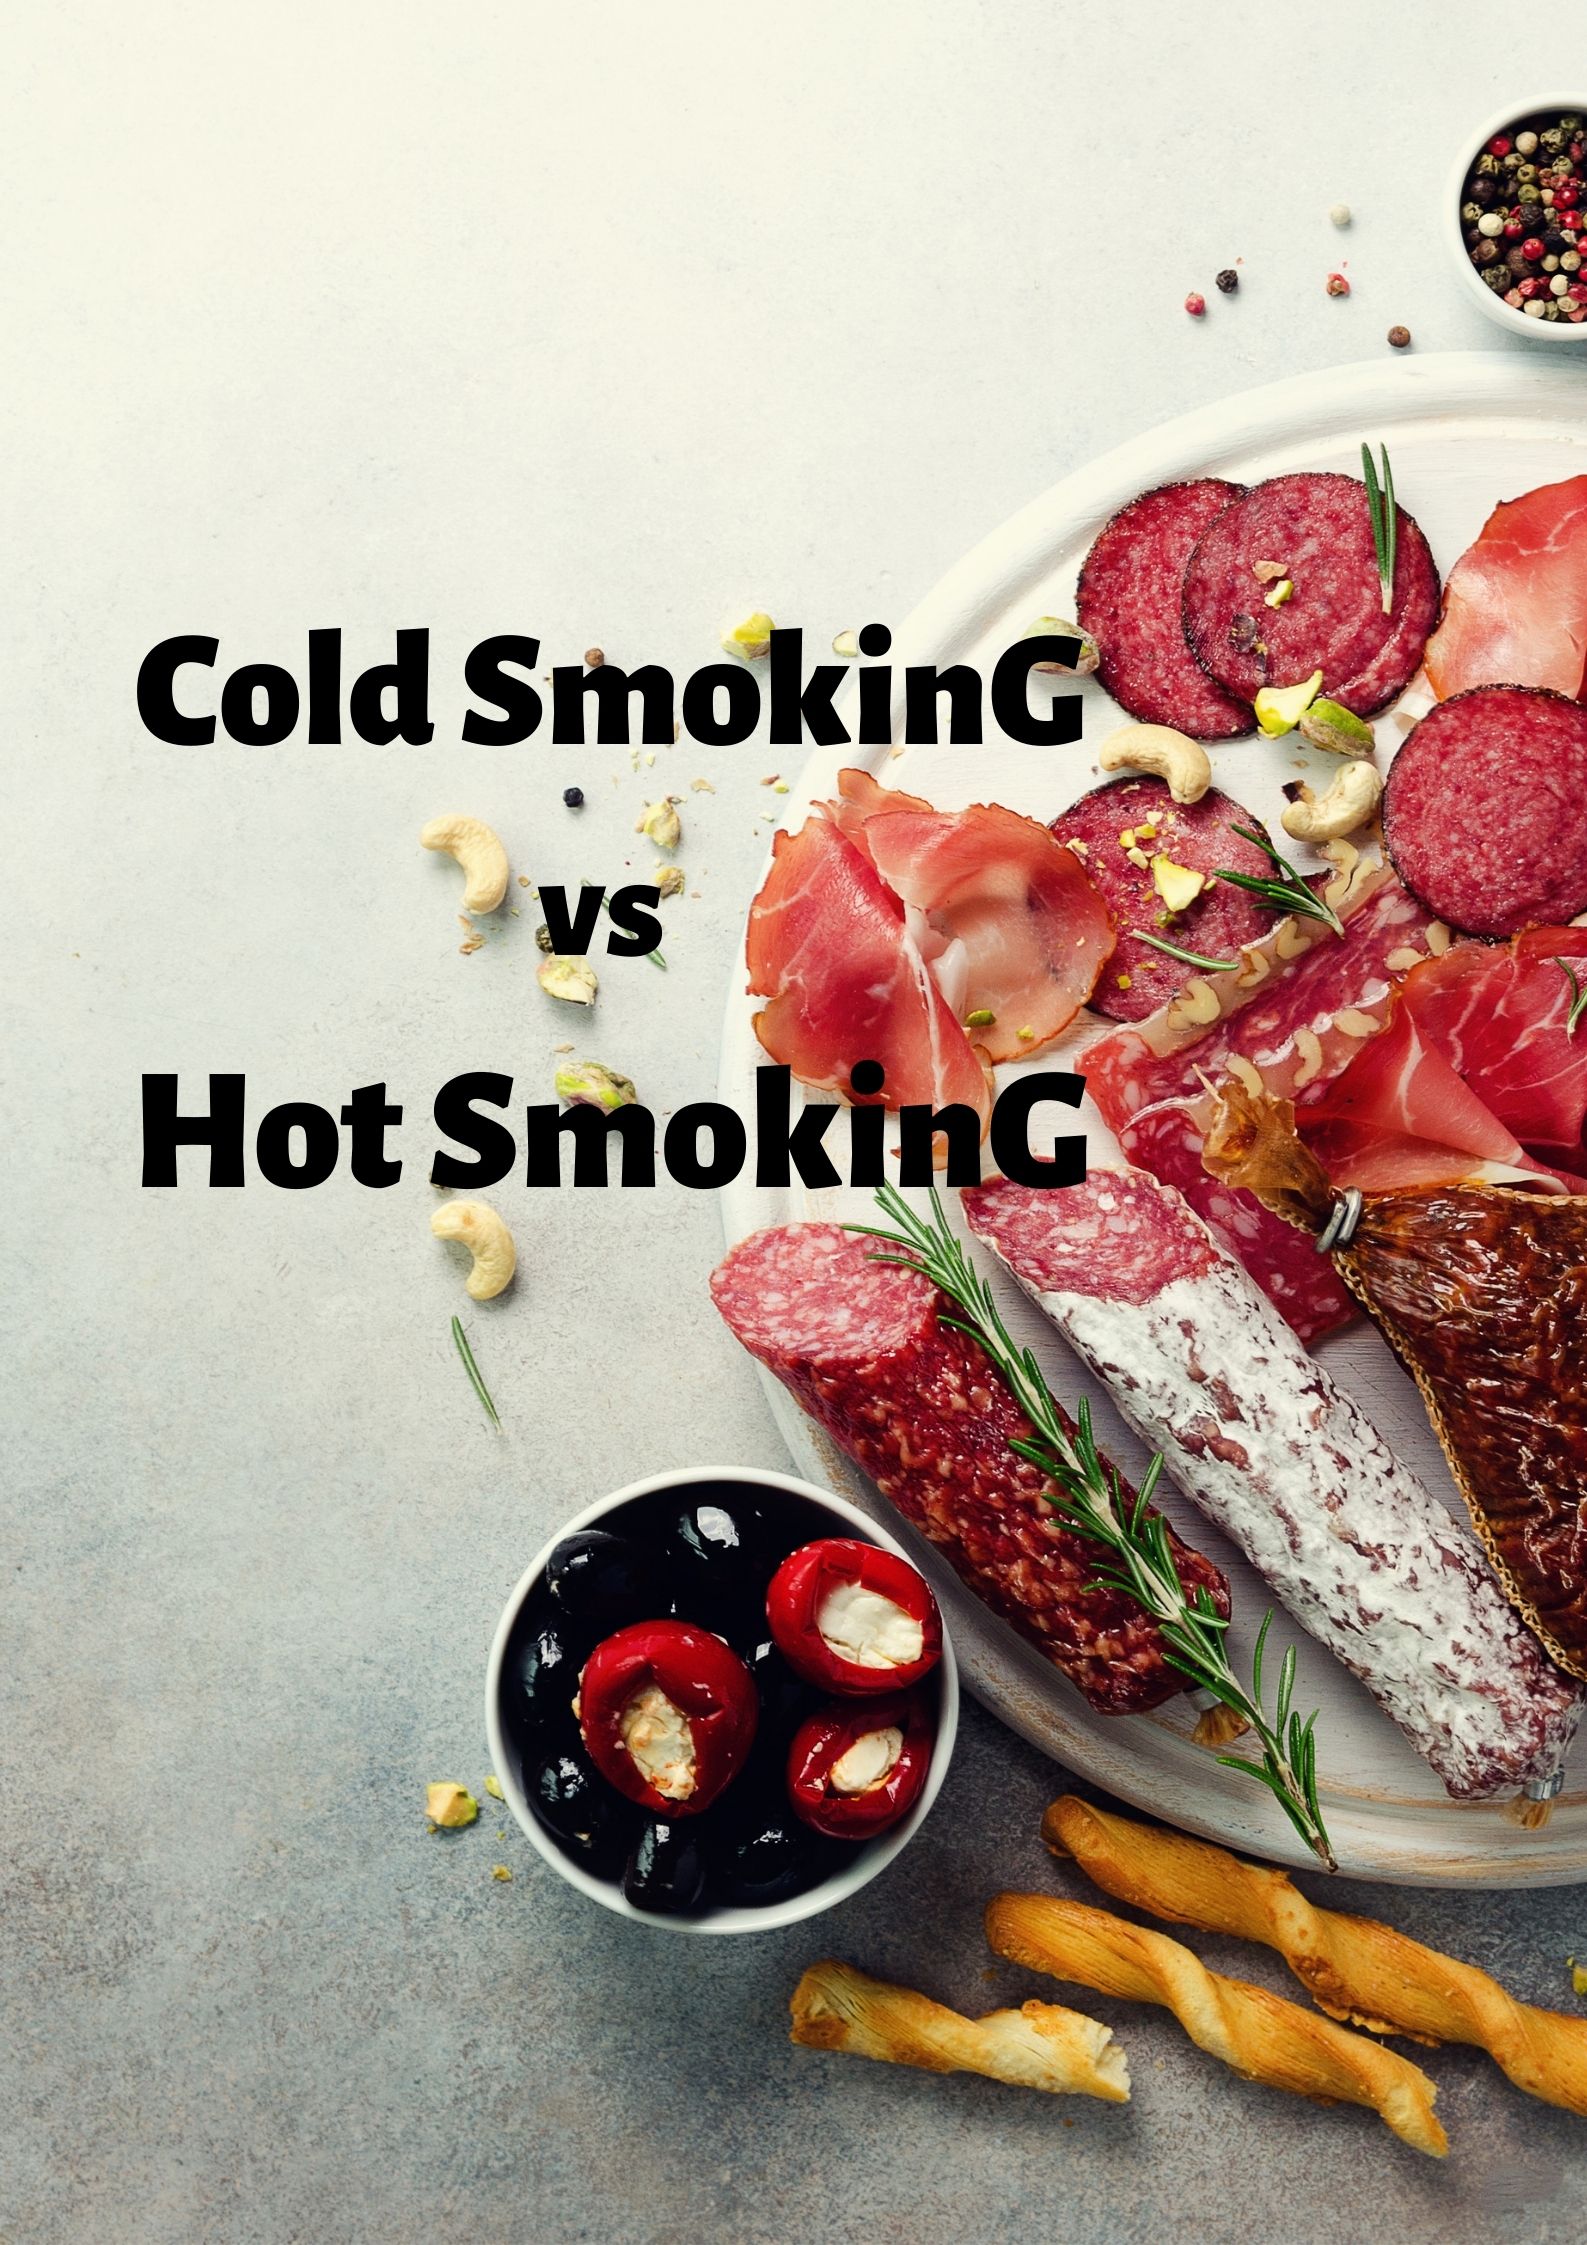 Cold smoking vs hot smoking